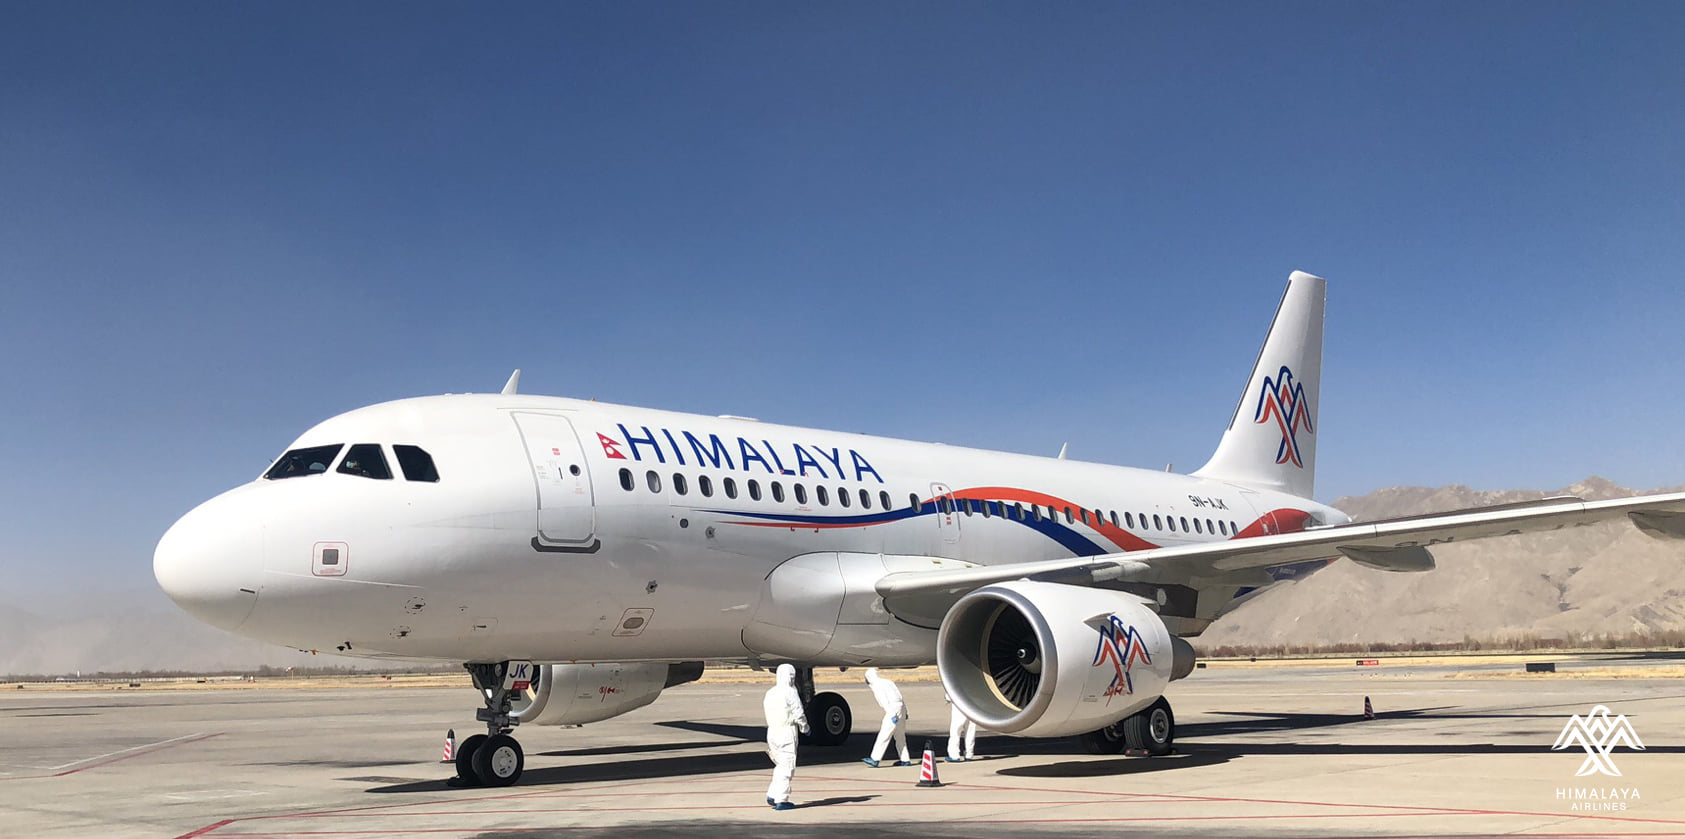 ल्हासामा हिमालय एयरलाइन्सको परीक्षण उडान